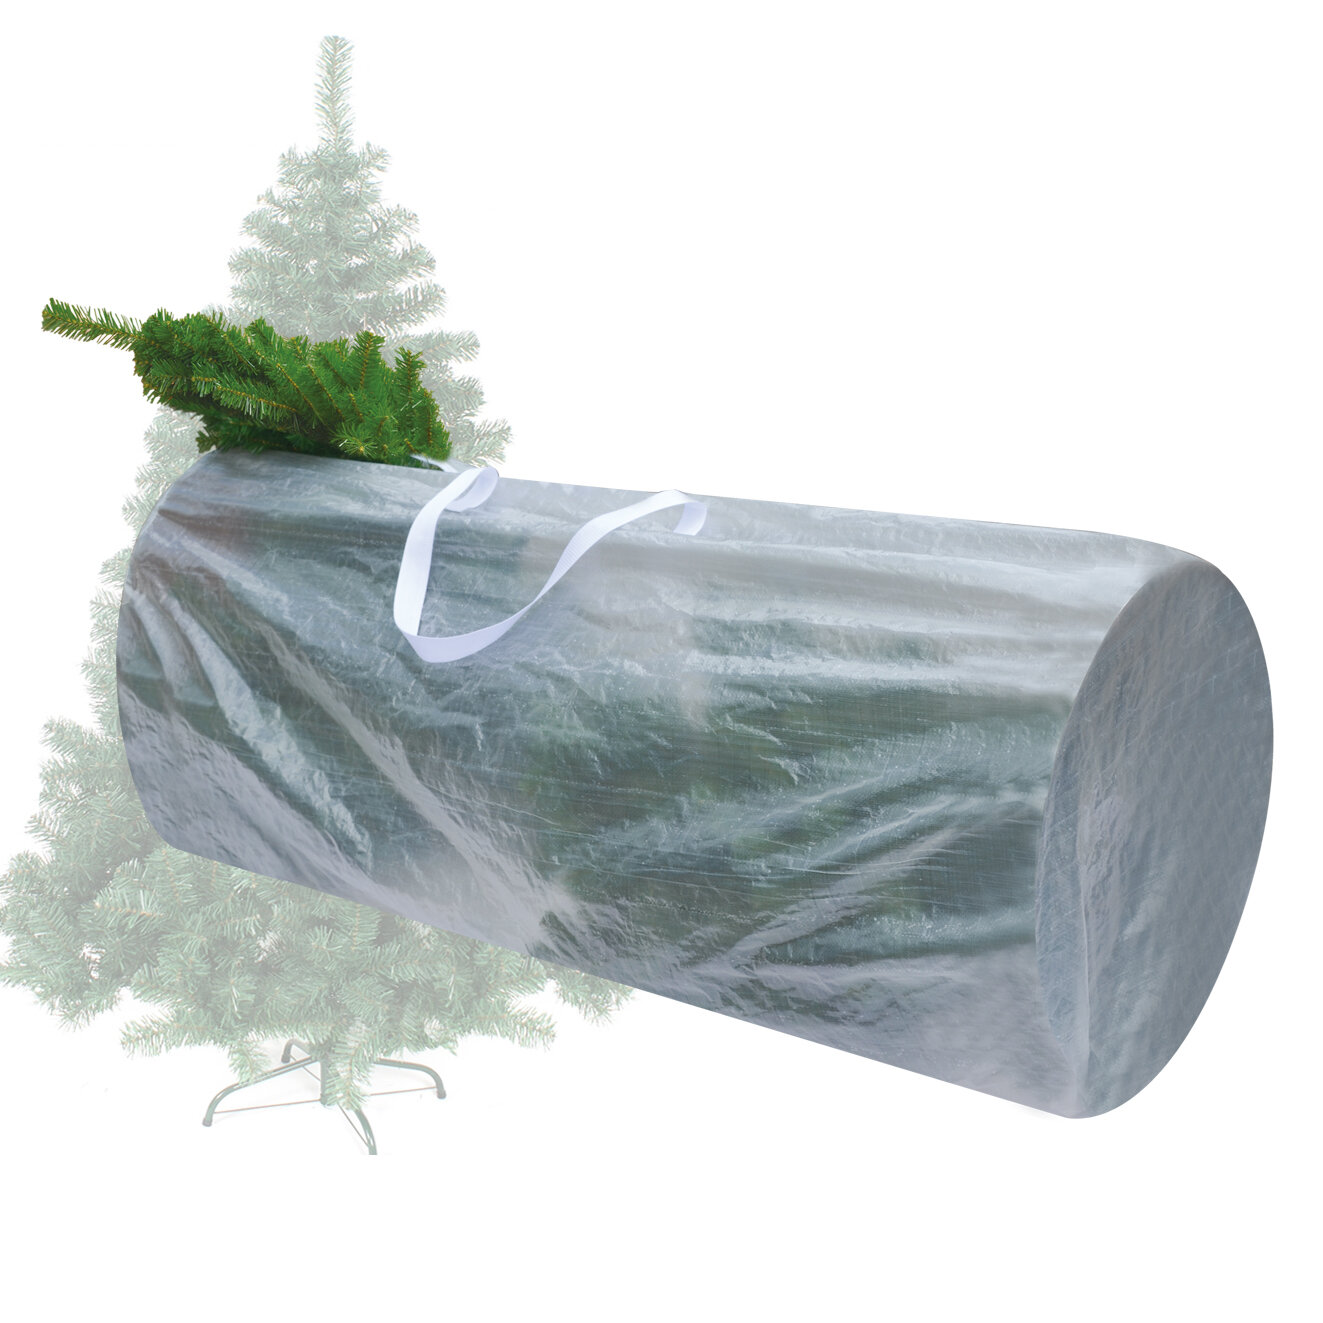 The Holiday Aisle® Grand sac de rangement pour arbre de noël